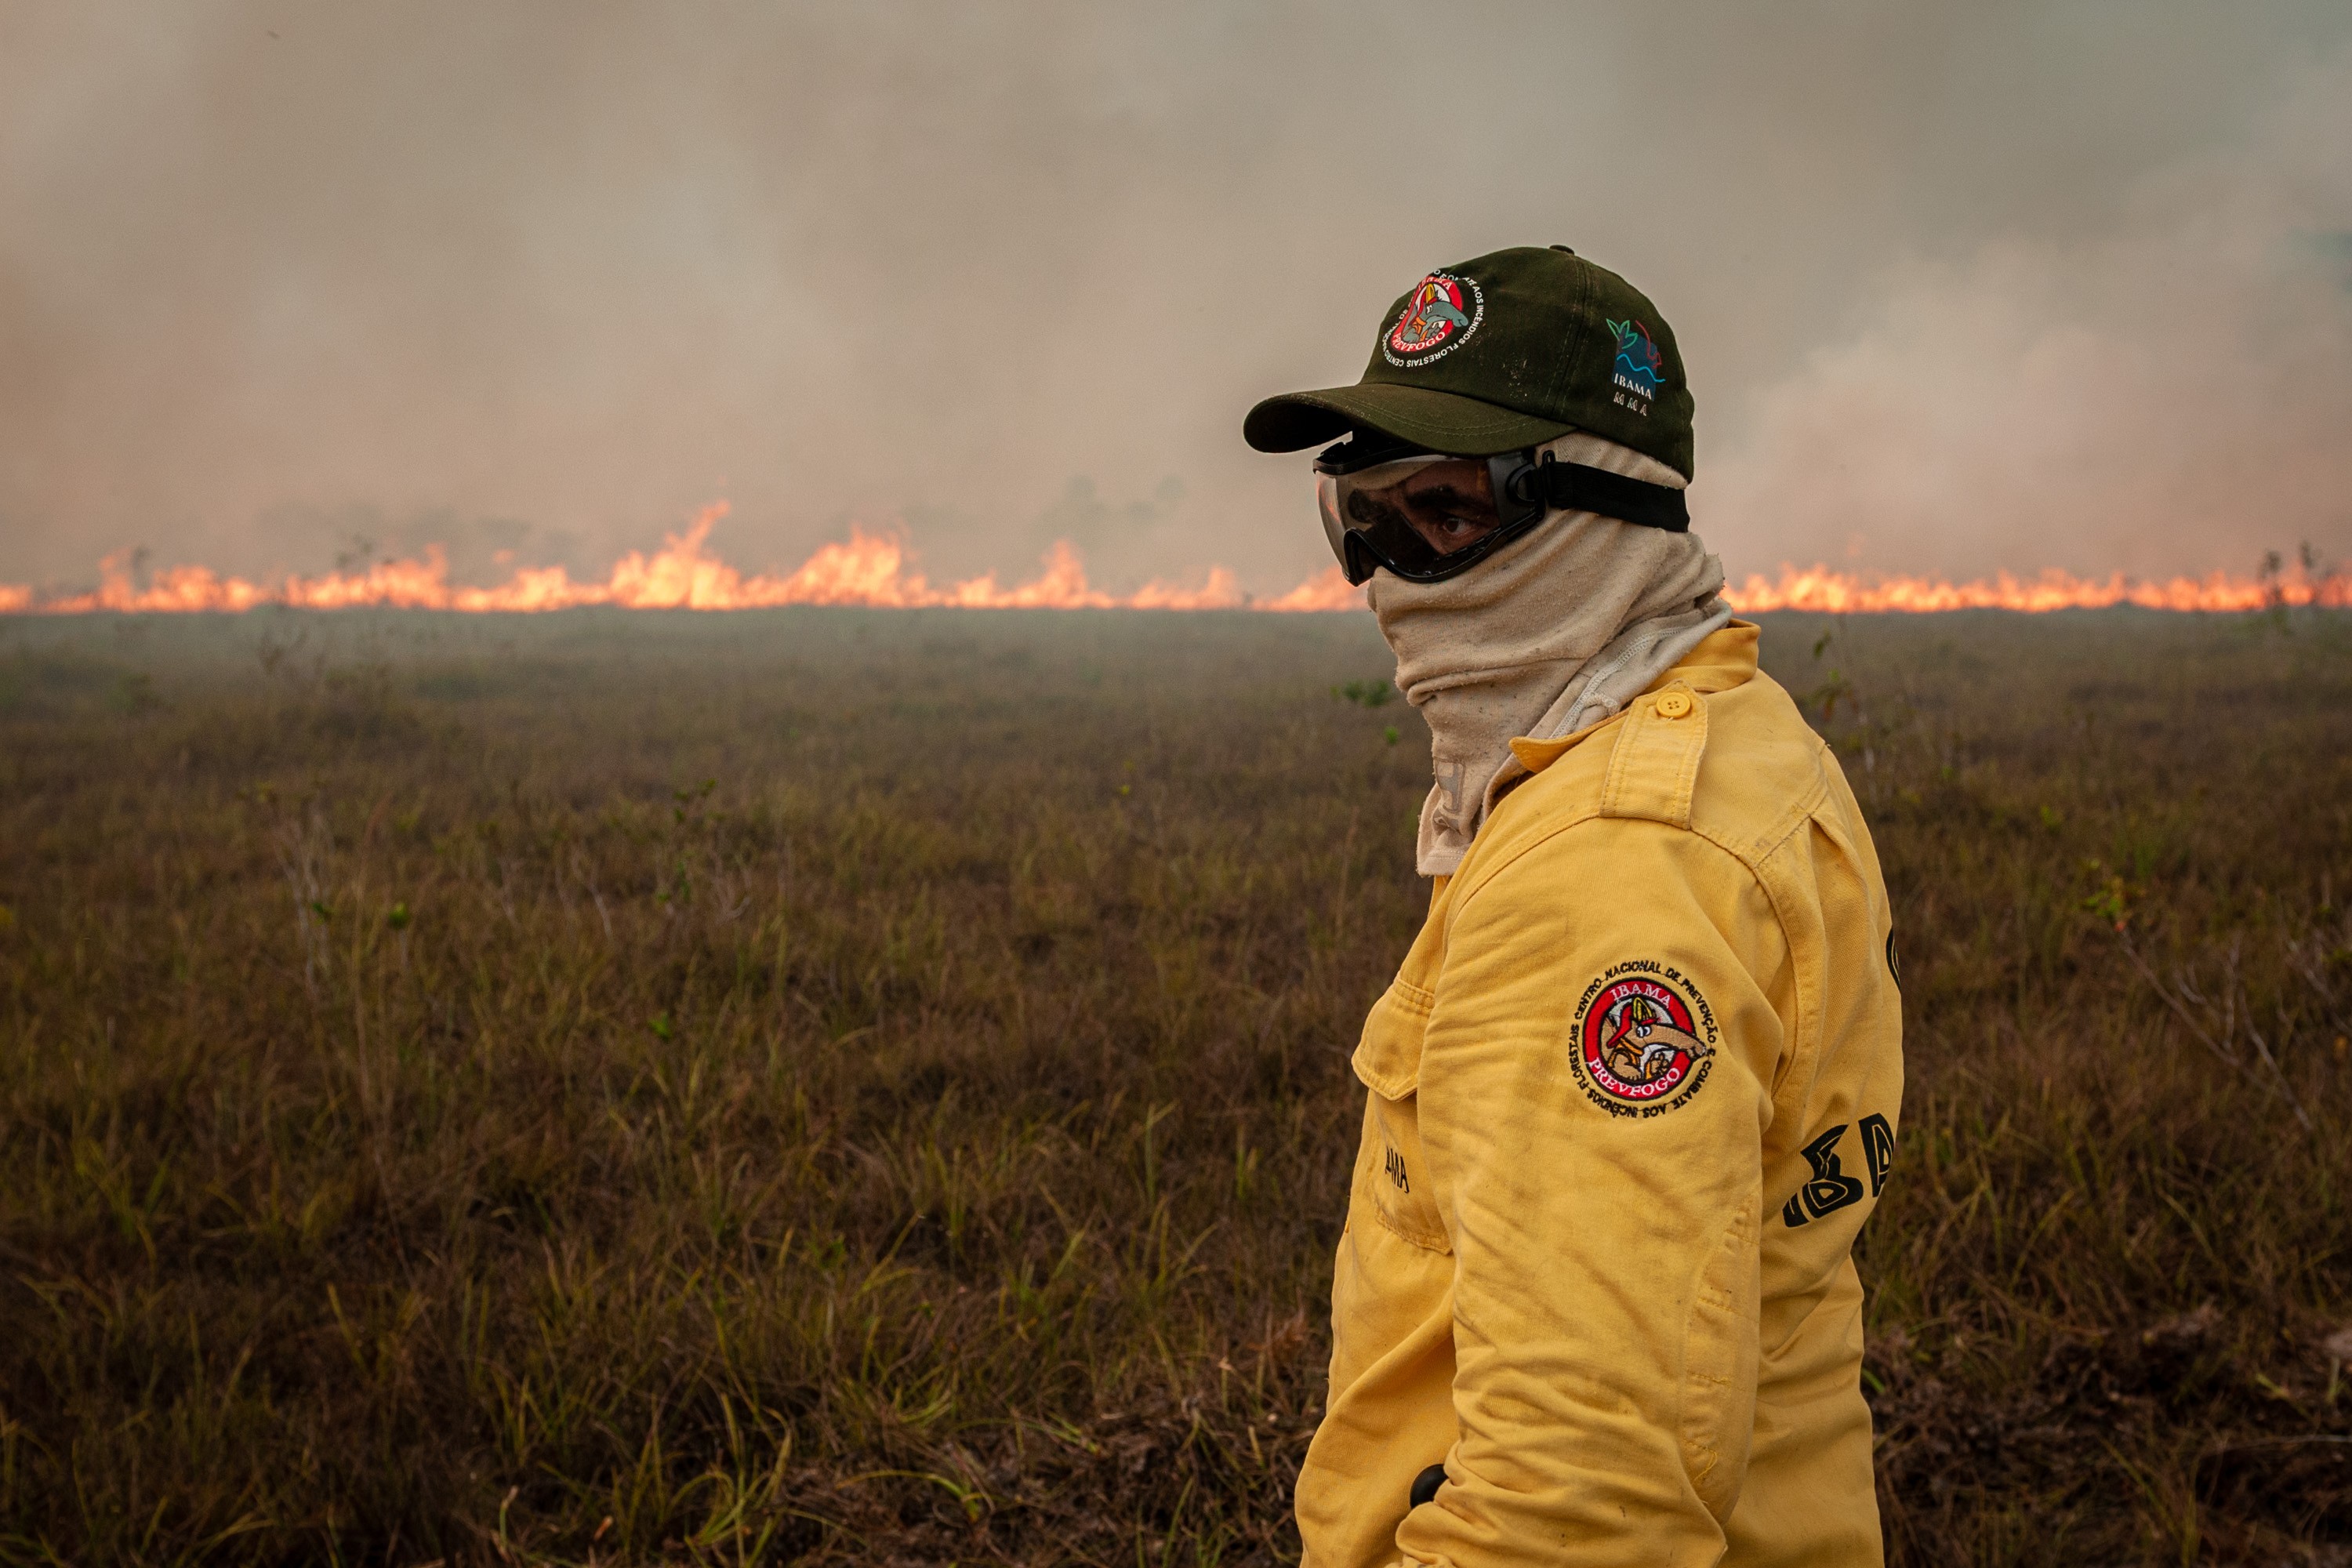 Brigadistas do Prevfogo/Ibama participam de operação conjunta para combater incêndios na Amazônia (Foto: Wikimedia Commons /  Vinícius Mendonça - Ibama)